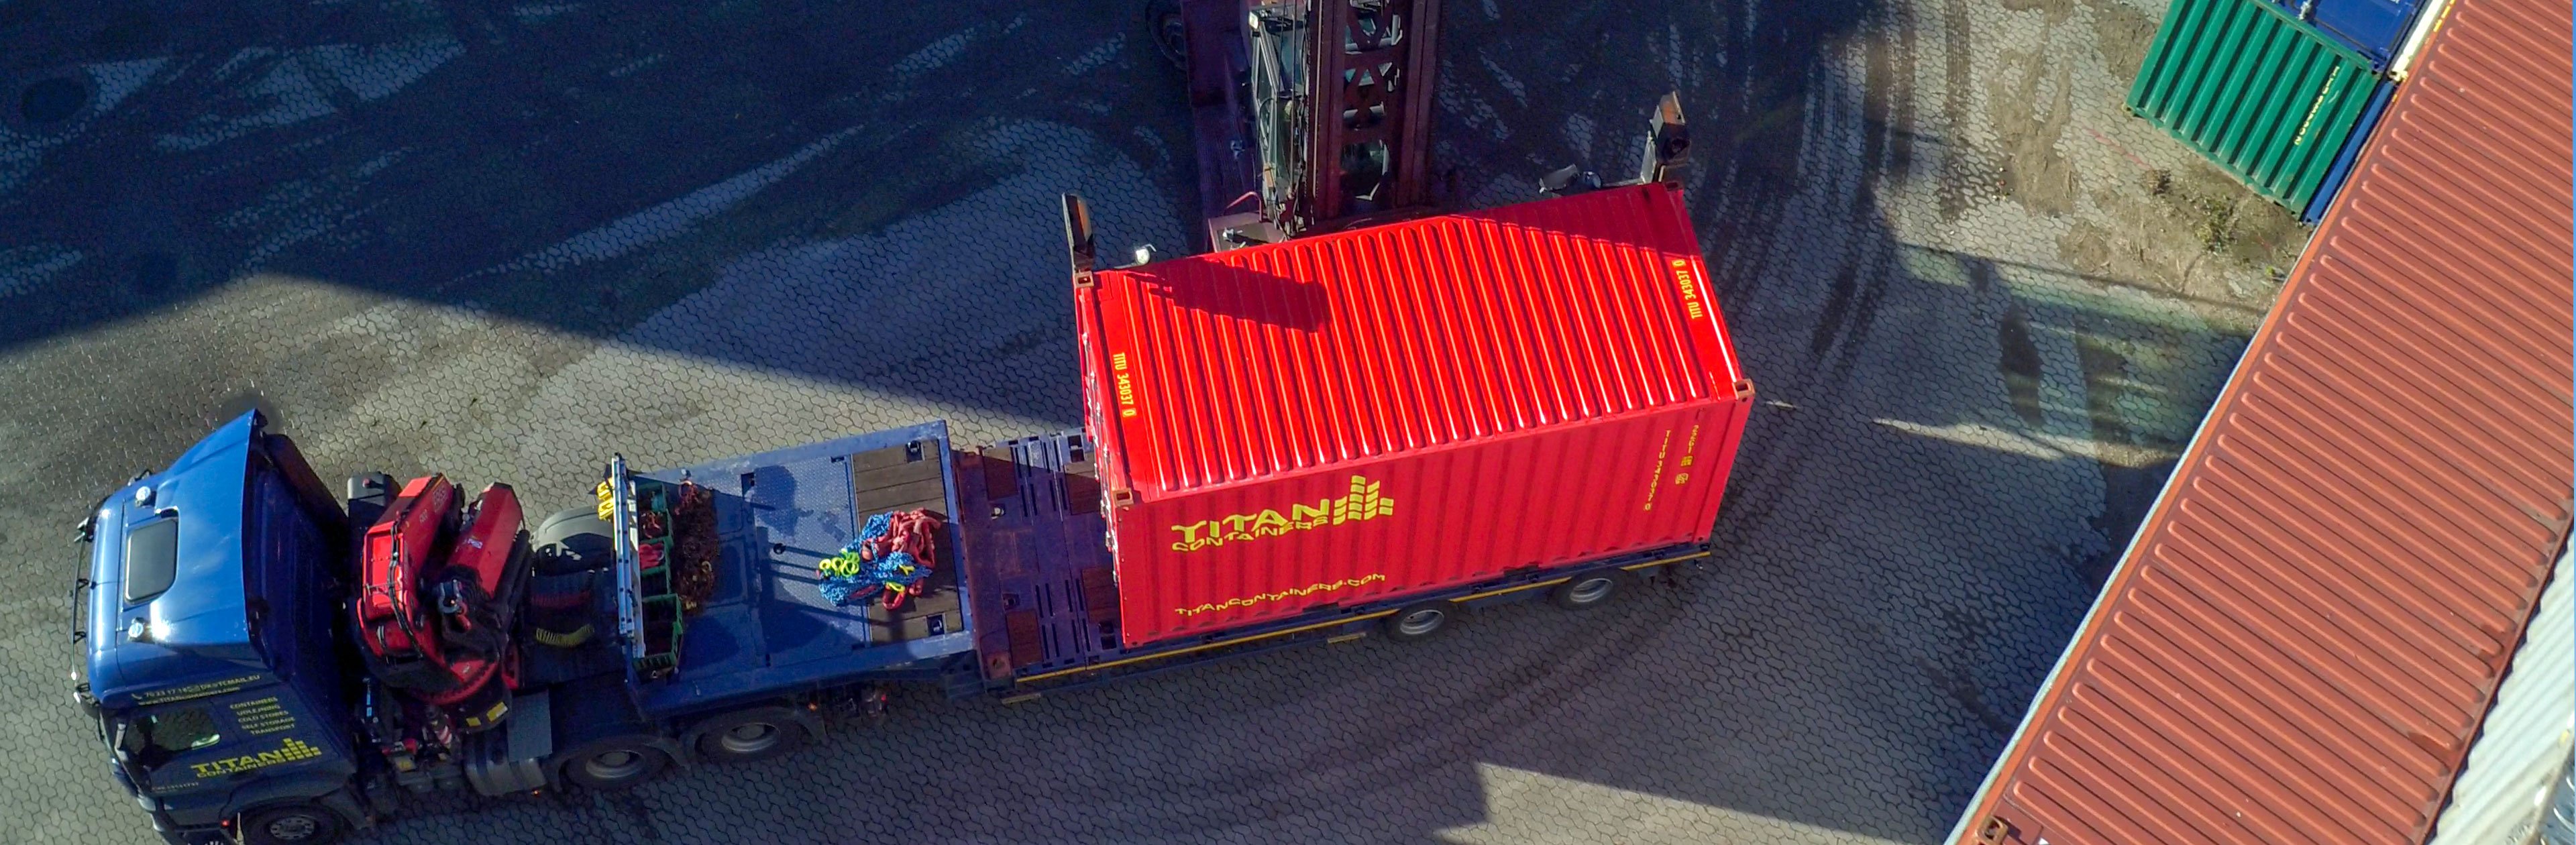 TITAN Taşıma - TITAN Containers